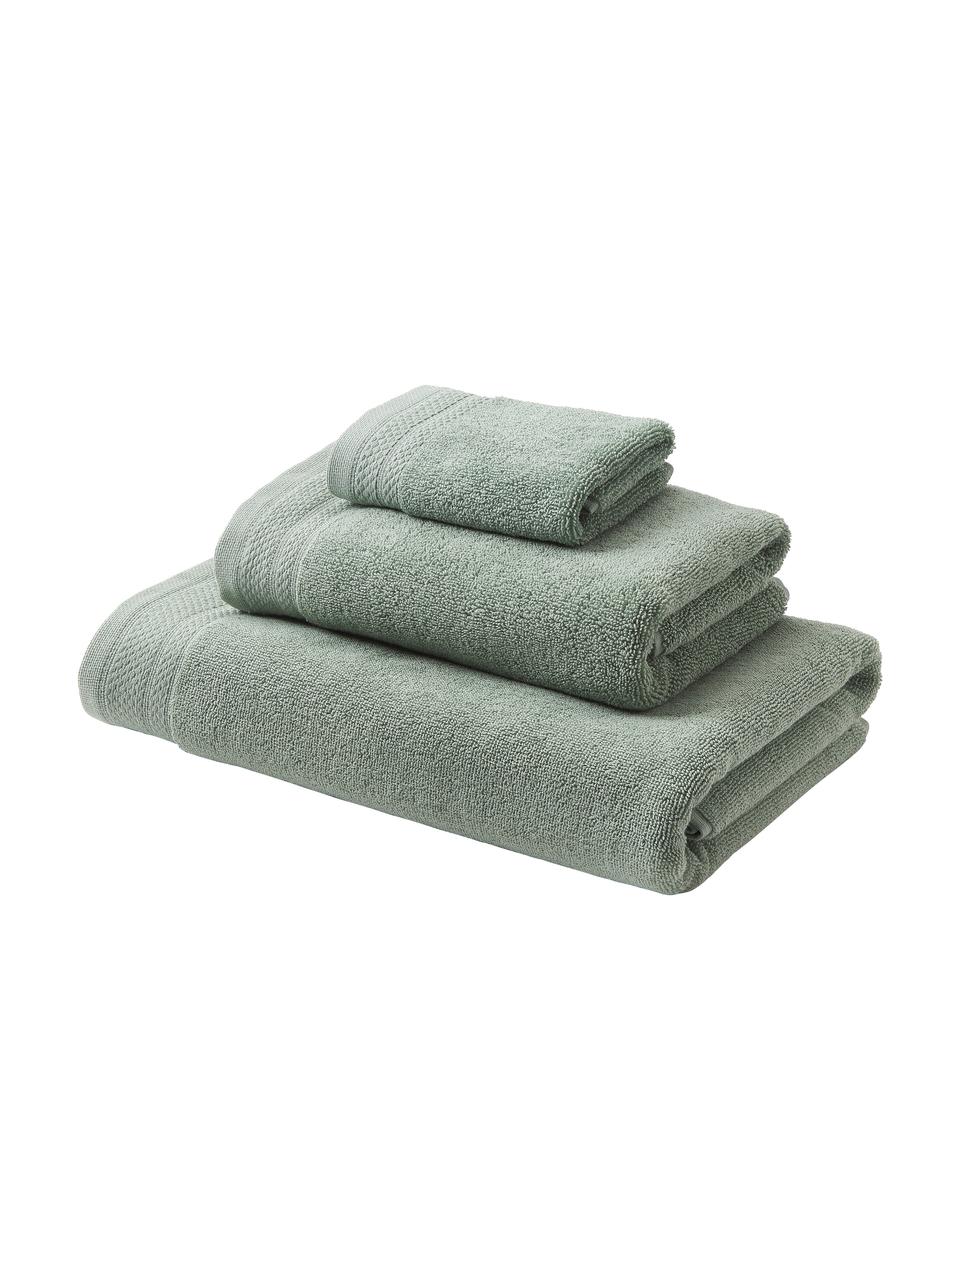 Set 3 asciugamani in cotone organico Premium, 100% cotone organico certificato GOTS (da GCL International, GCL-300517).
Qualità pesante, 600 g/m², Verde salvia, Set in varie misure